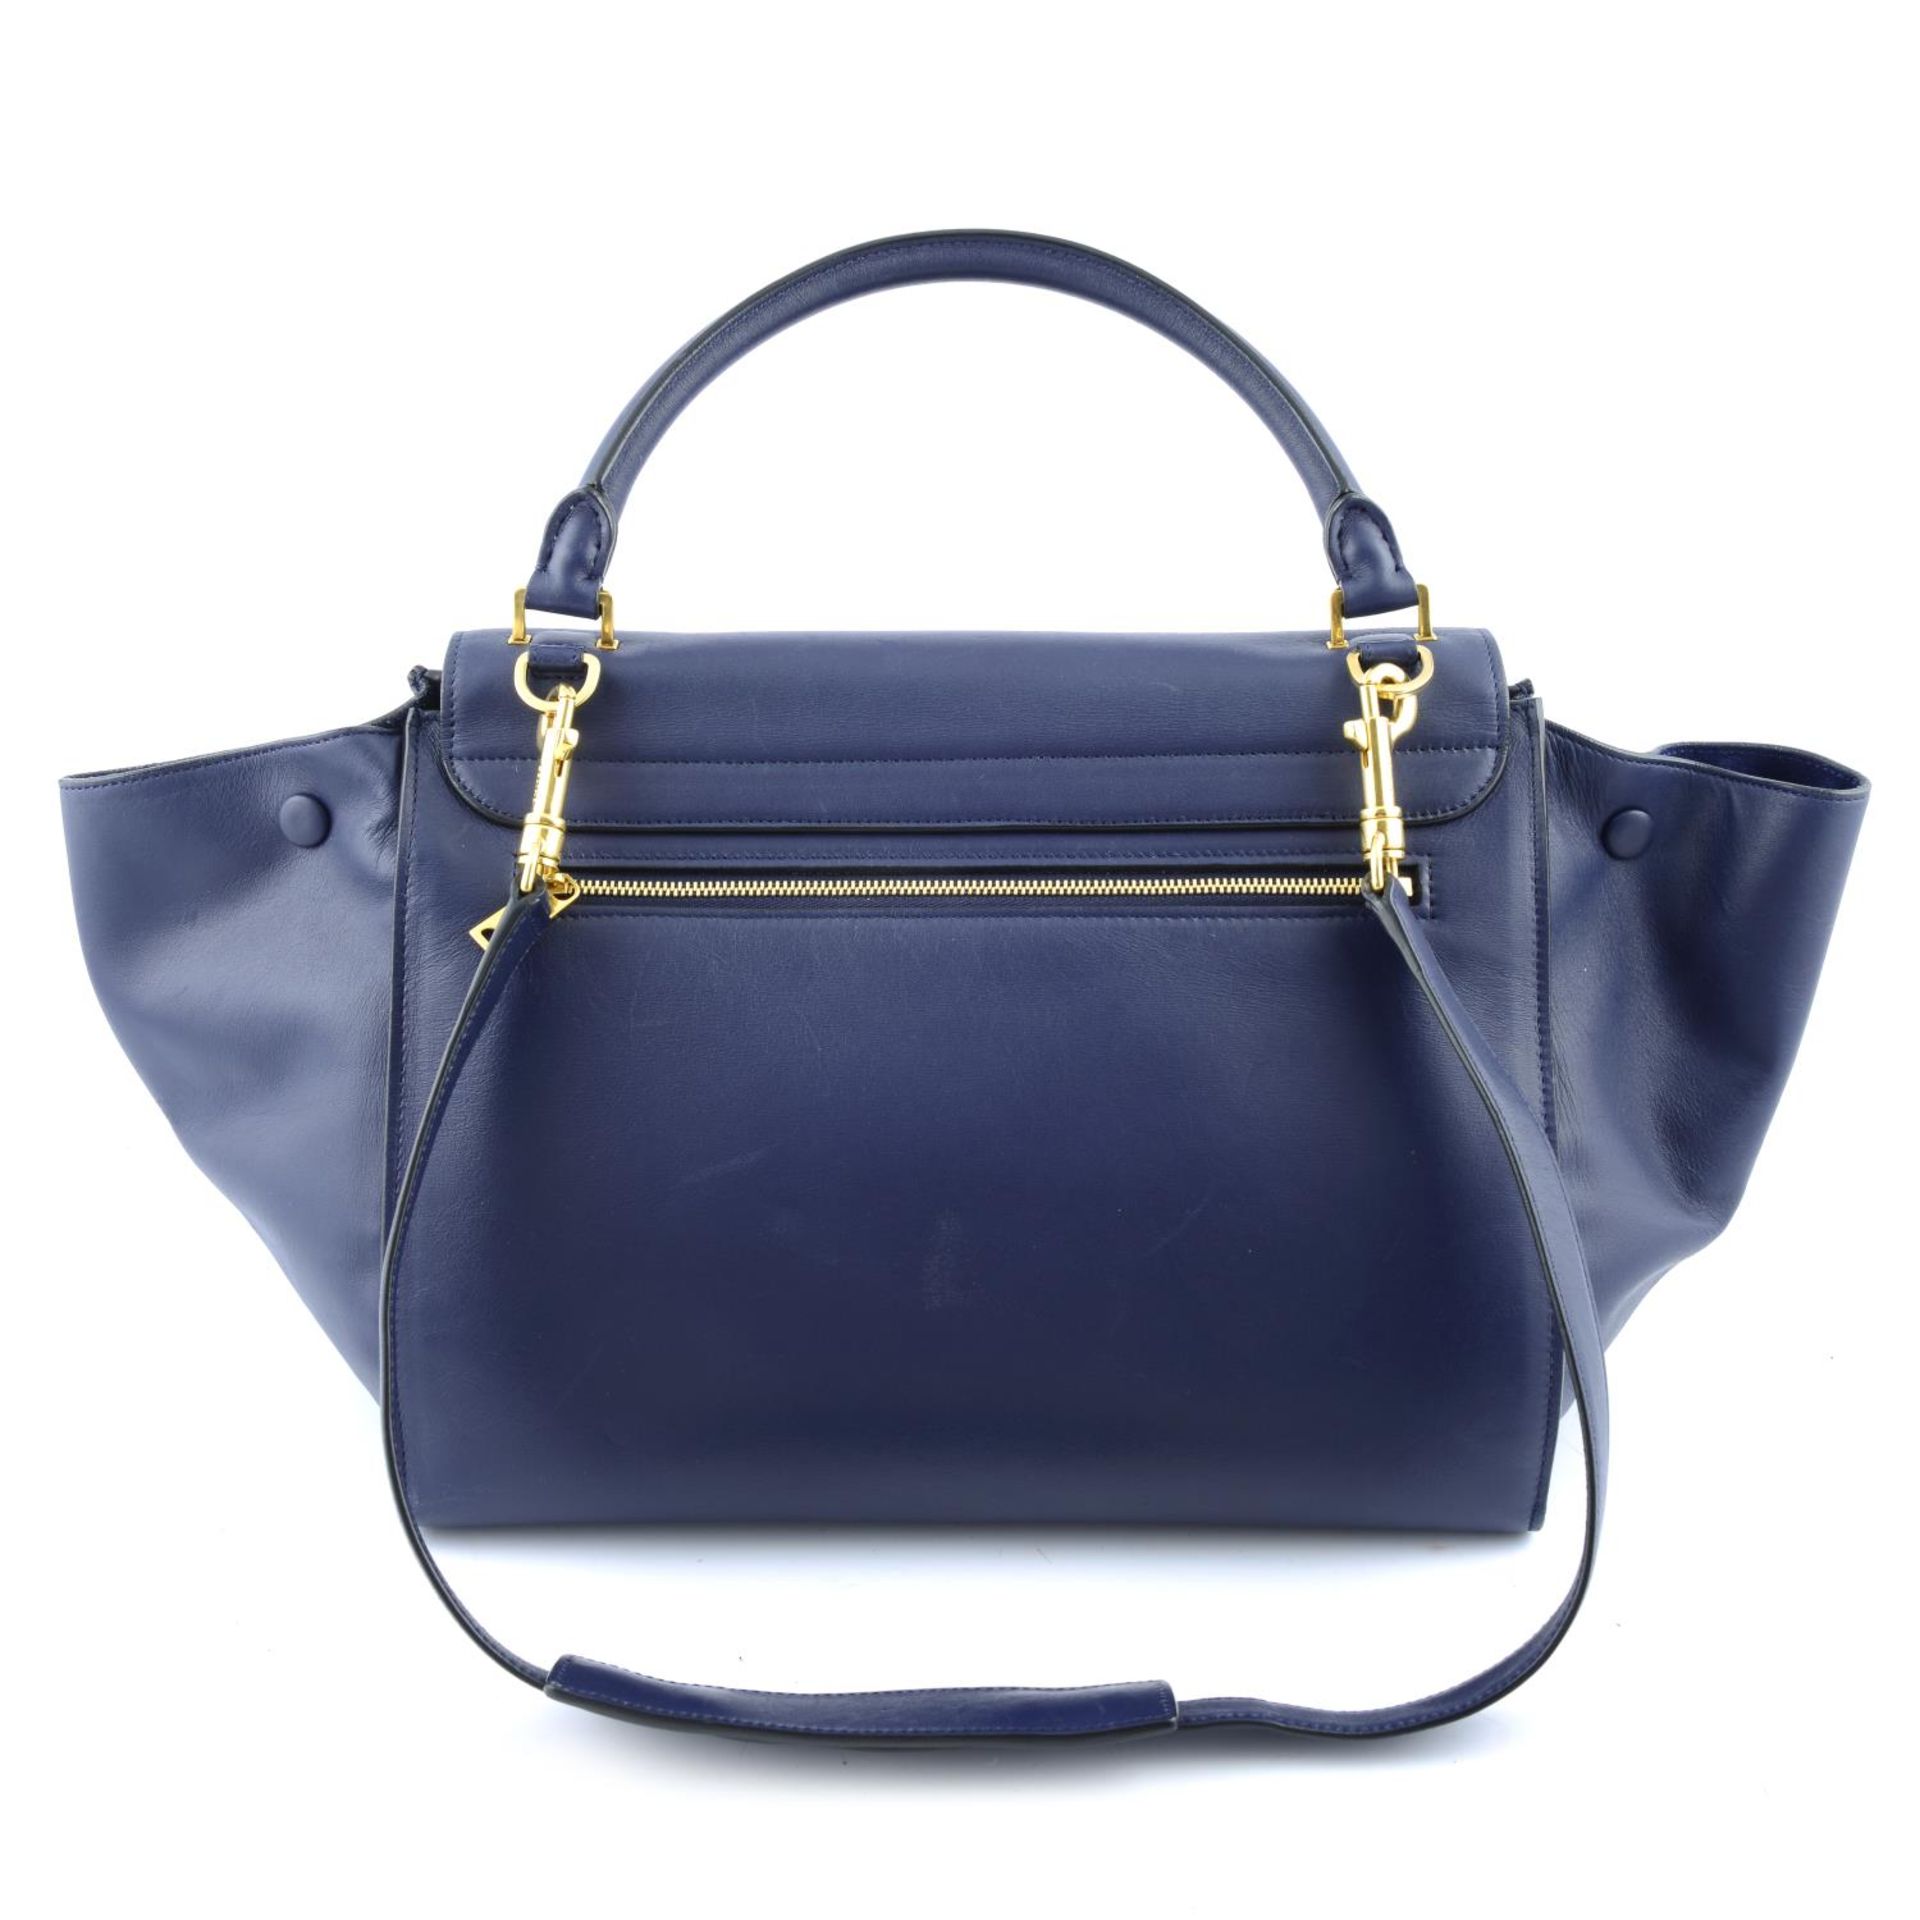 CÉLINE - a blue leather Trapeze handbag. - Bild 2 aus 4